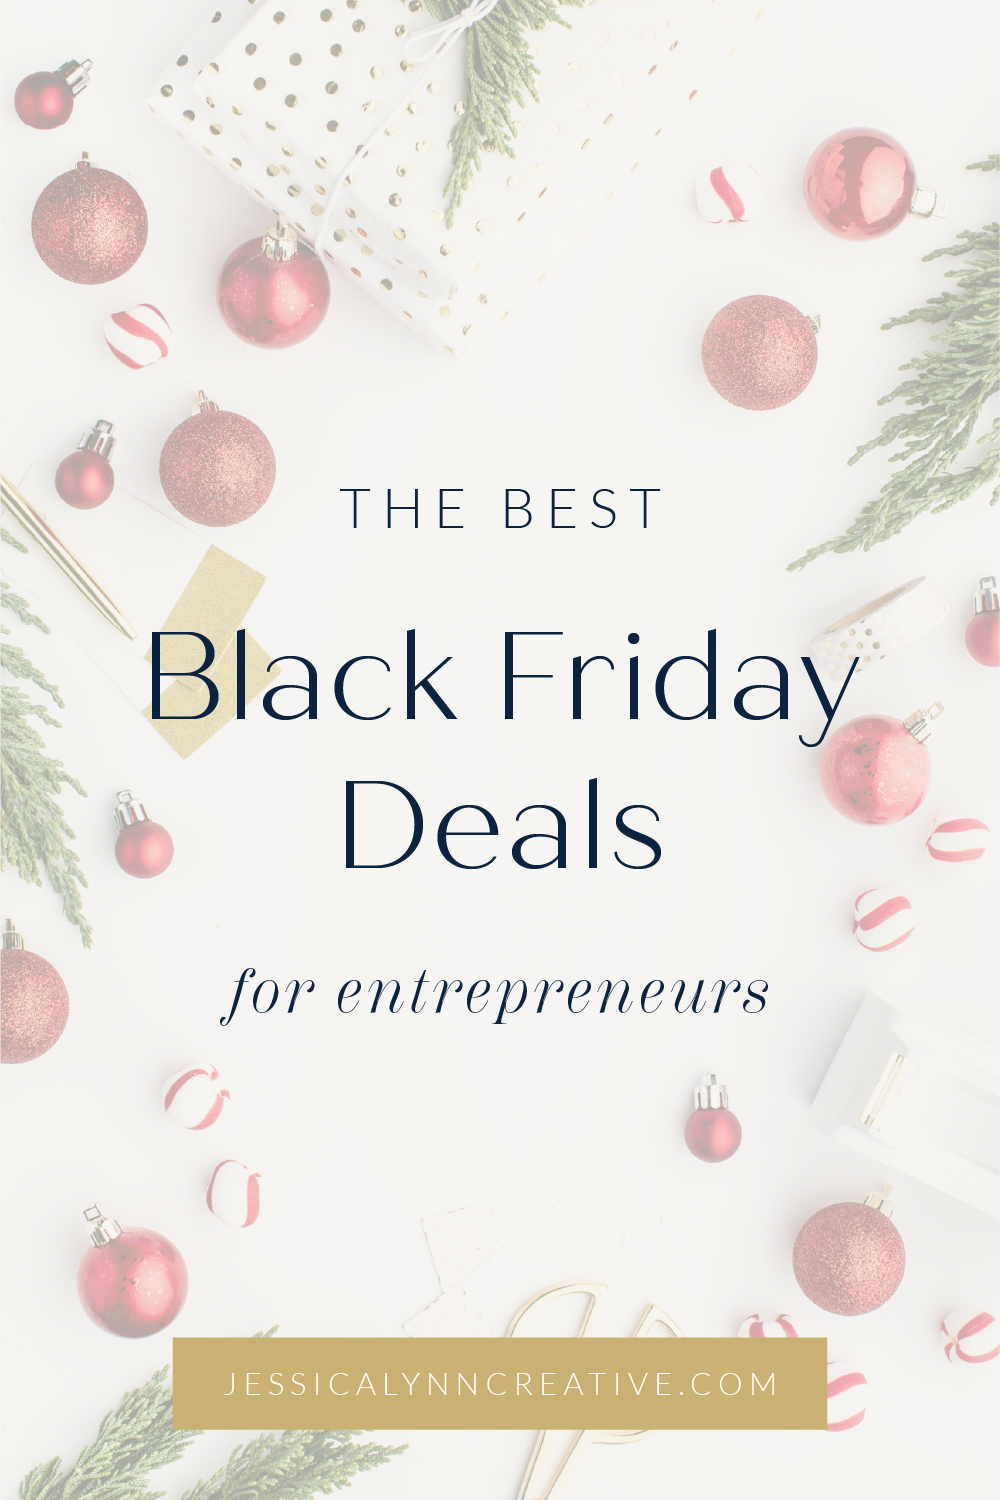 The Best Black Friday Deals for Entrepreneurs